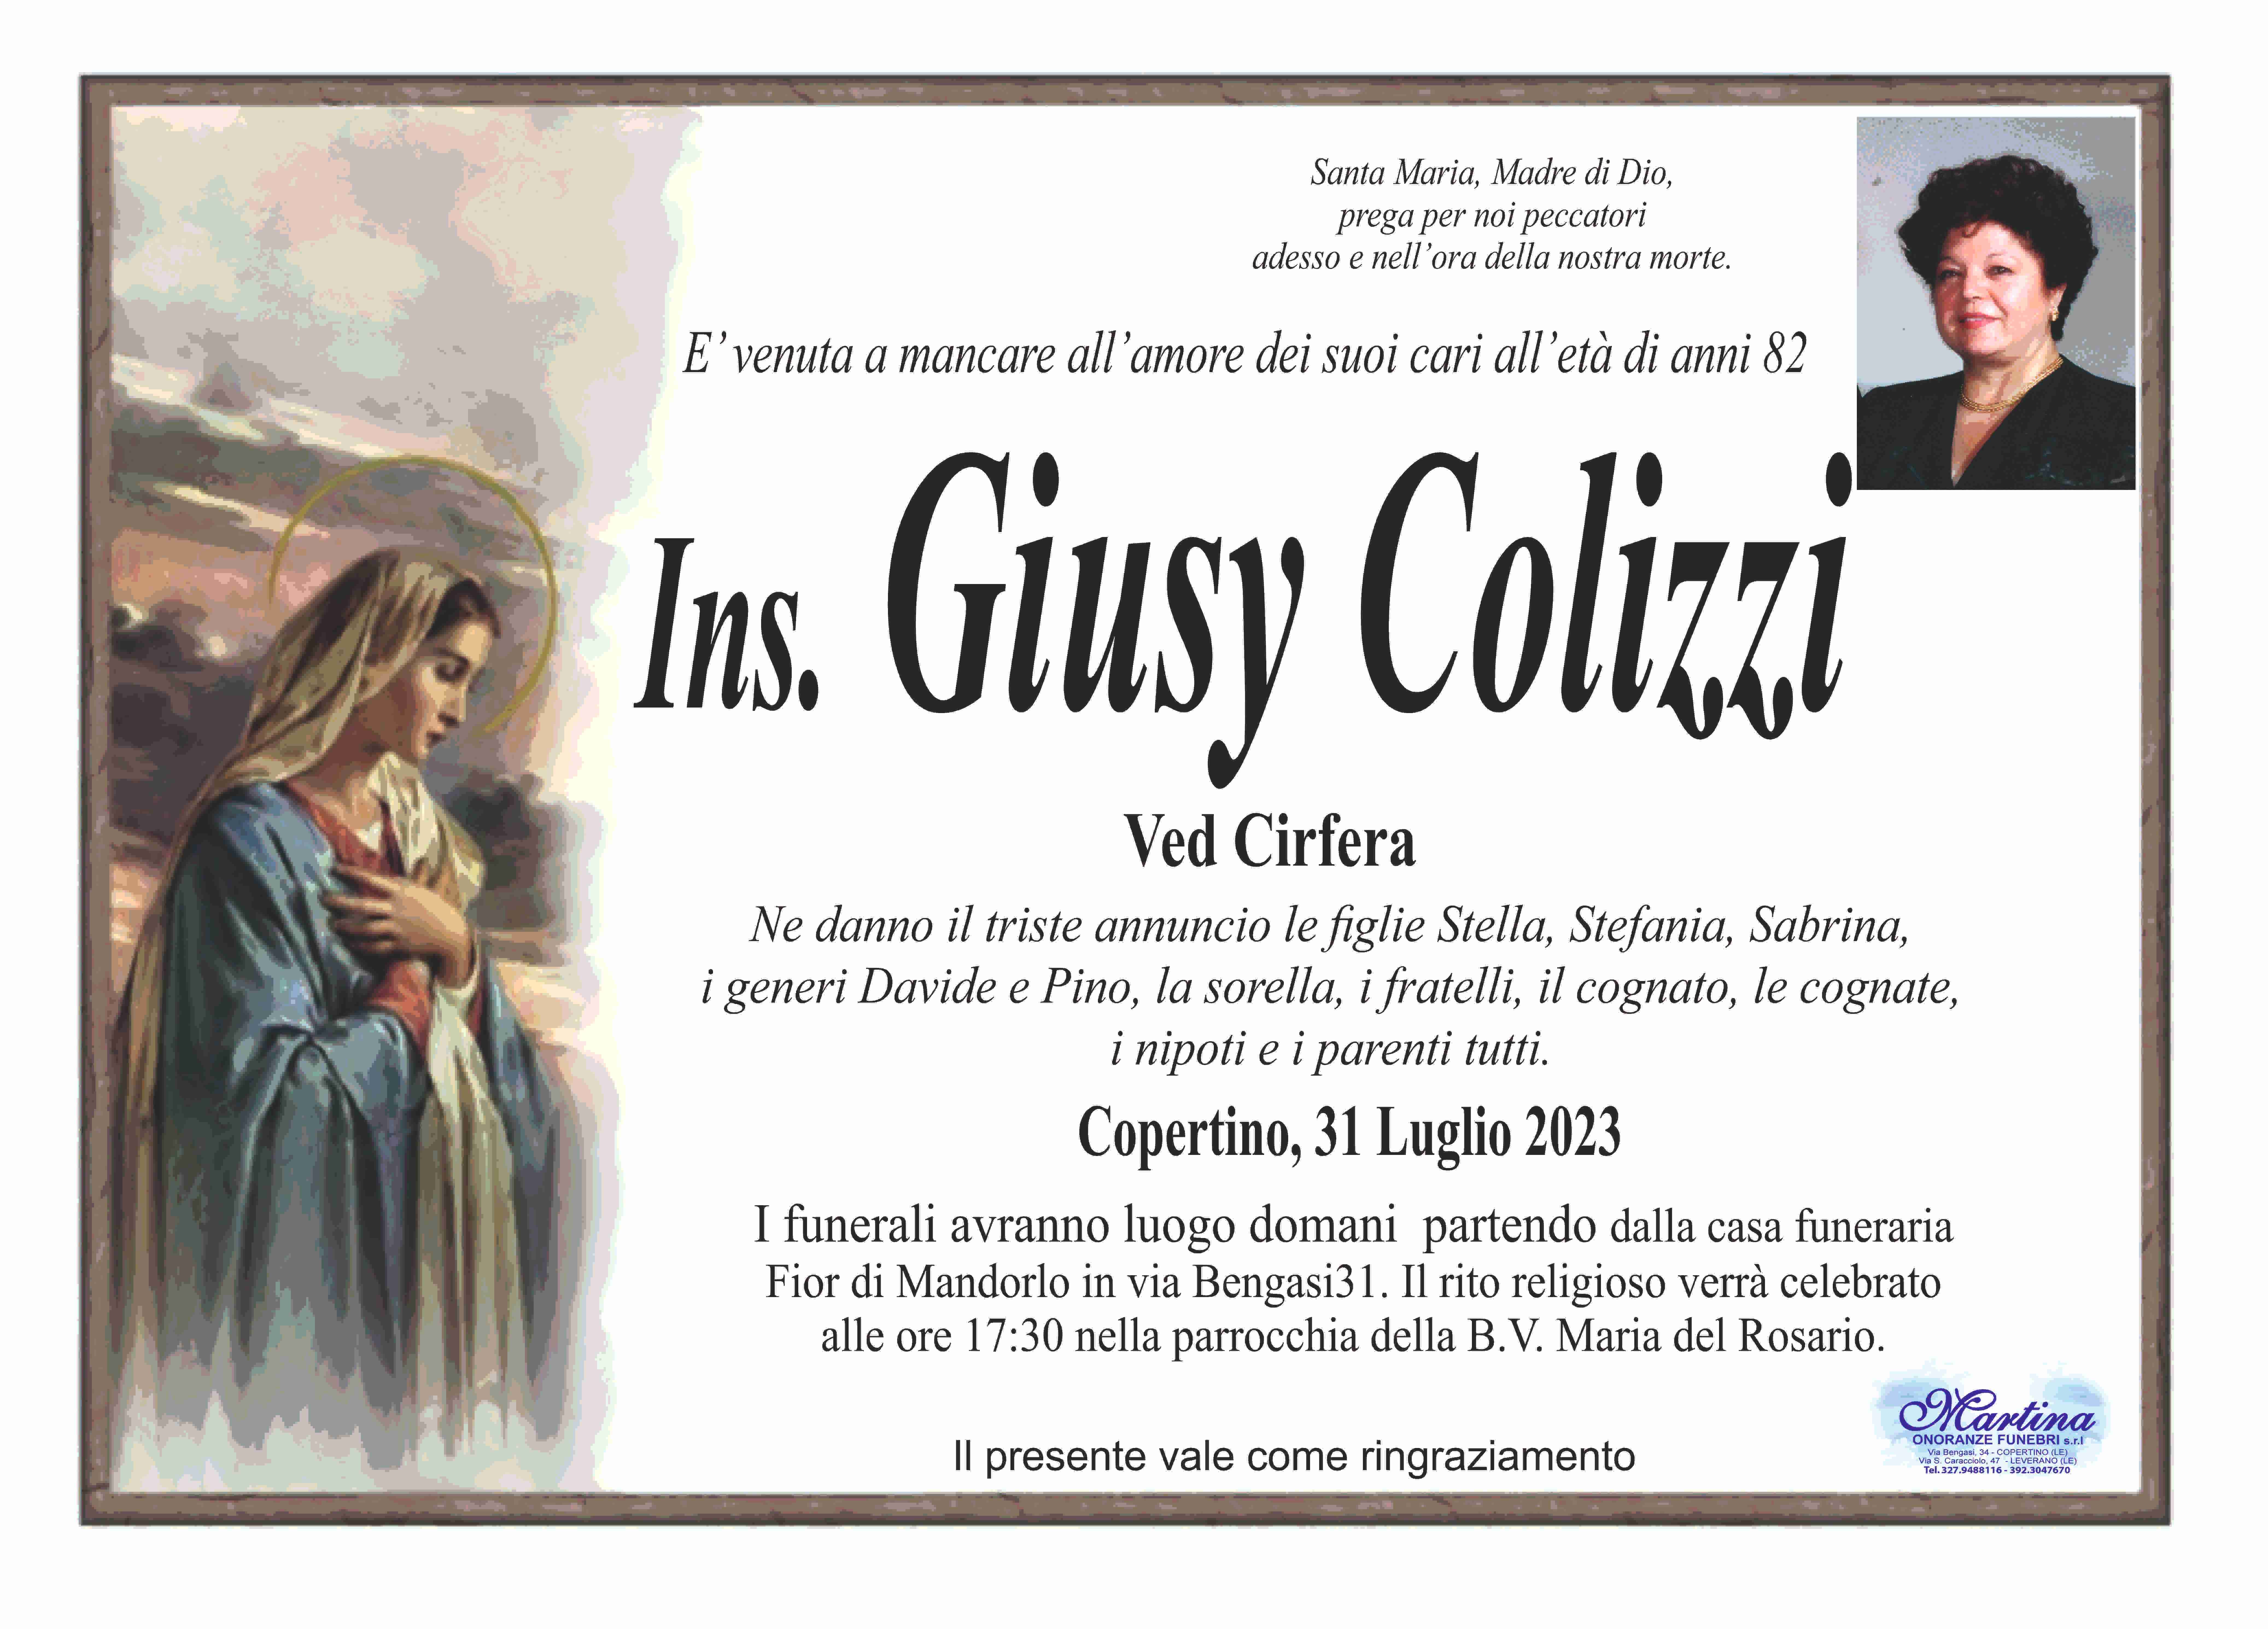 Giuseppa Colizzi